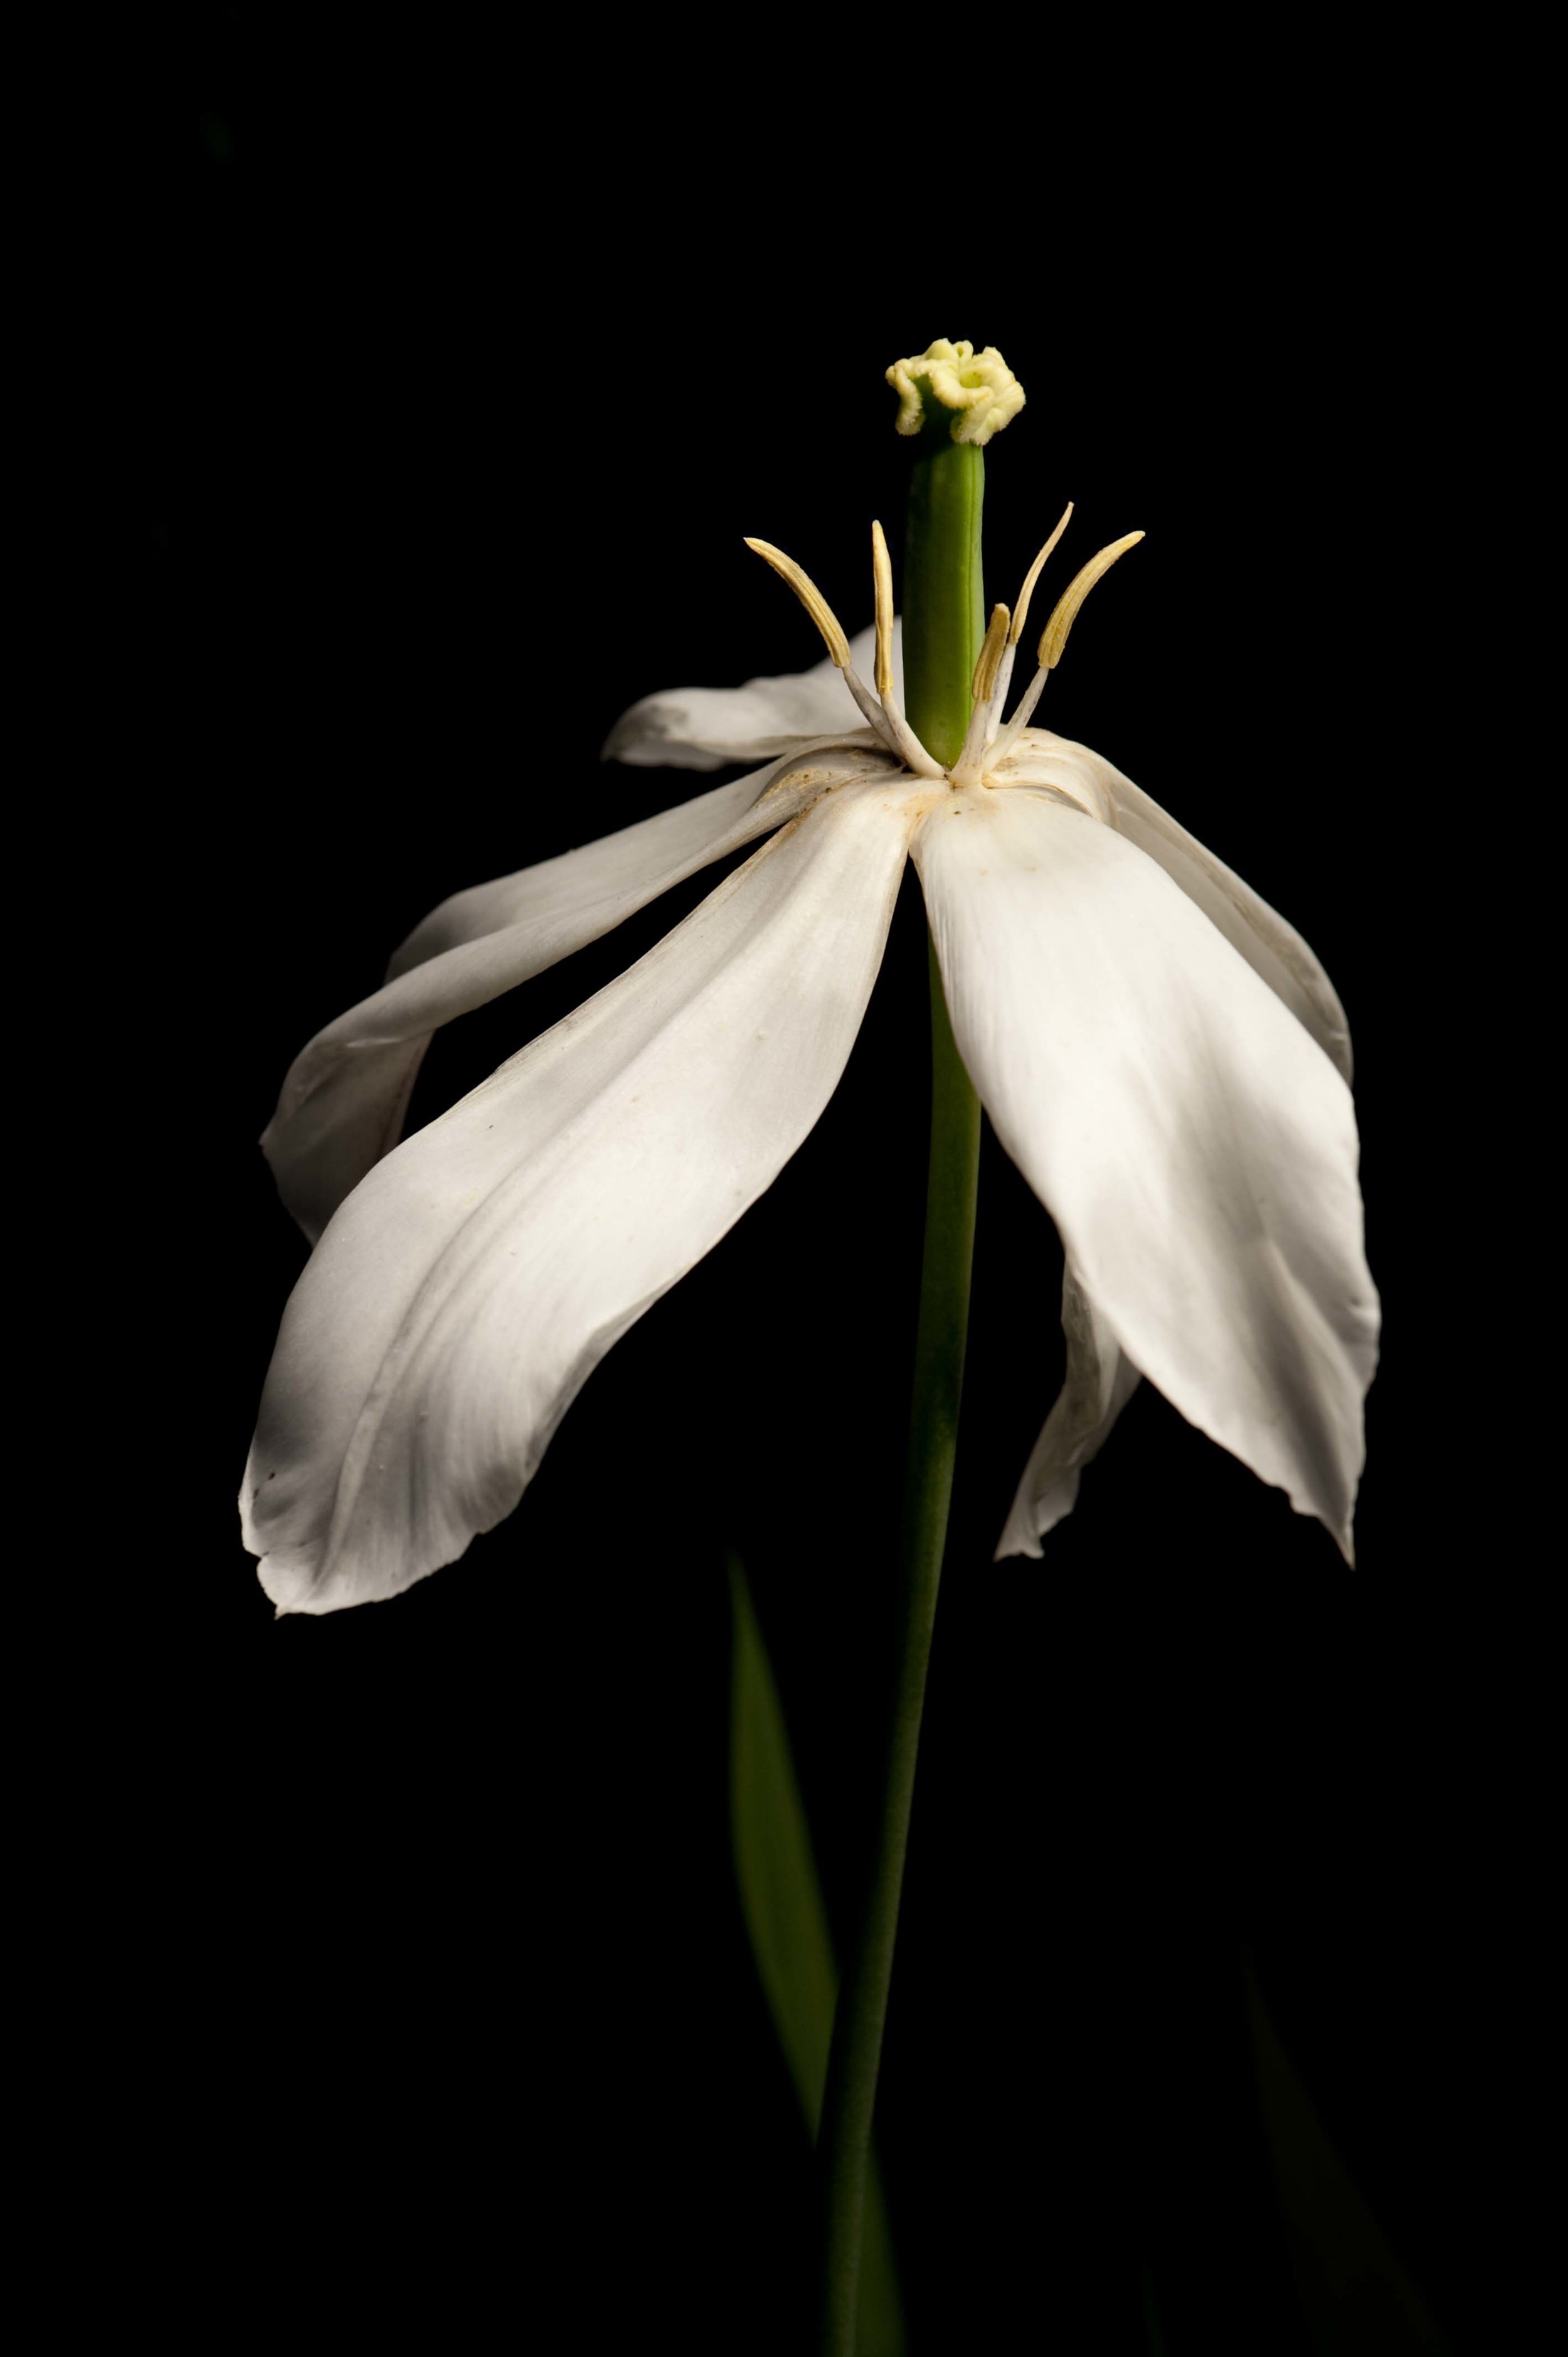   White Tulip | Tulipe Blanche  